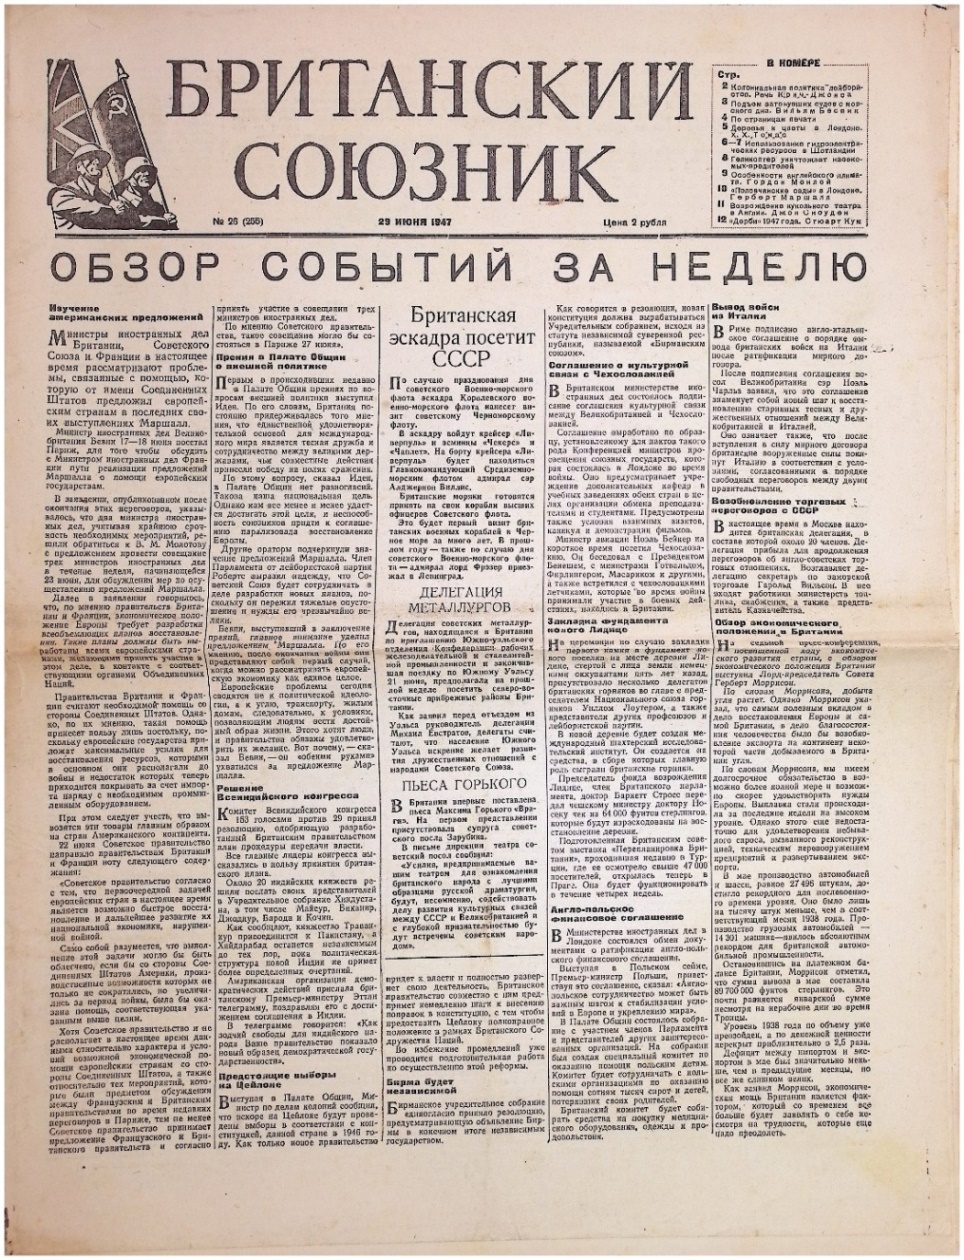 Газета "Британский союзник" № 26 (255) від 29 червня 1947р.